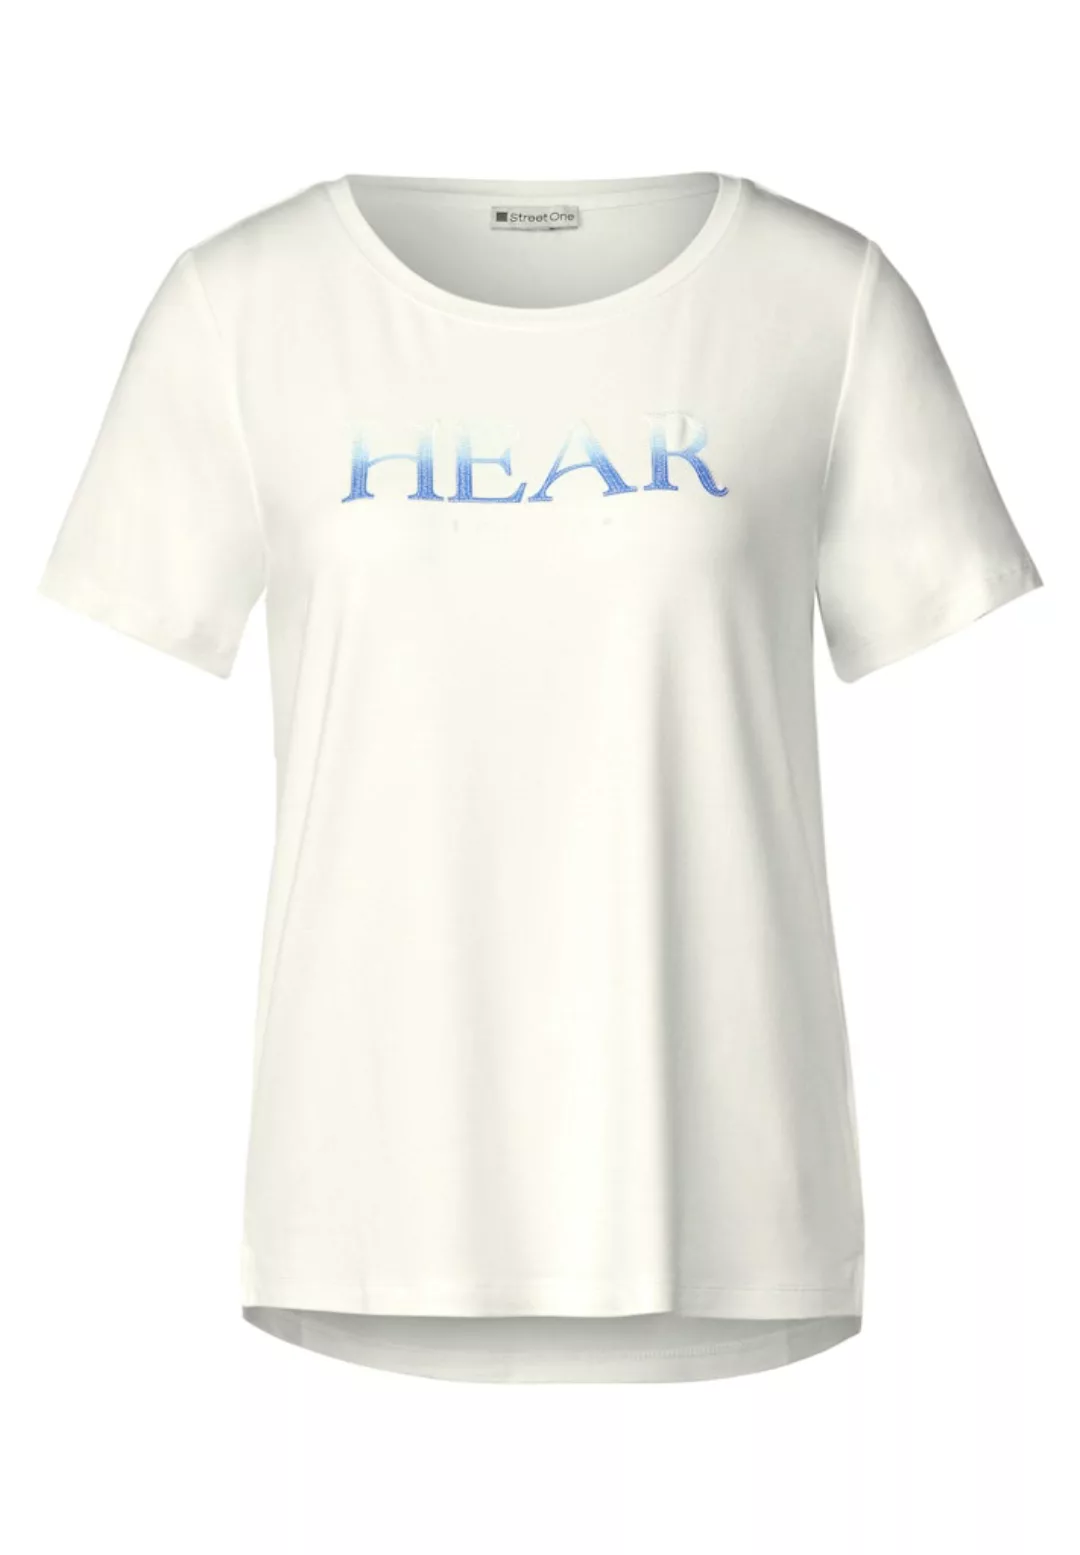 STREET ONE Kurzarmshirt - T-Shirt - Shirt - T-Shirt mit Pailletten Print günstig online kaufen